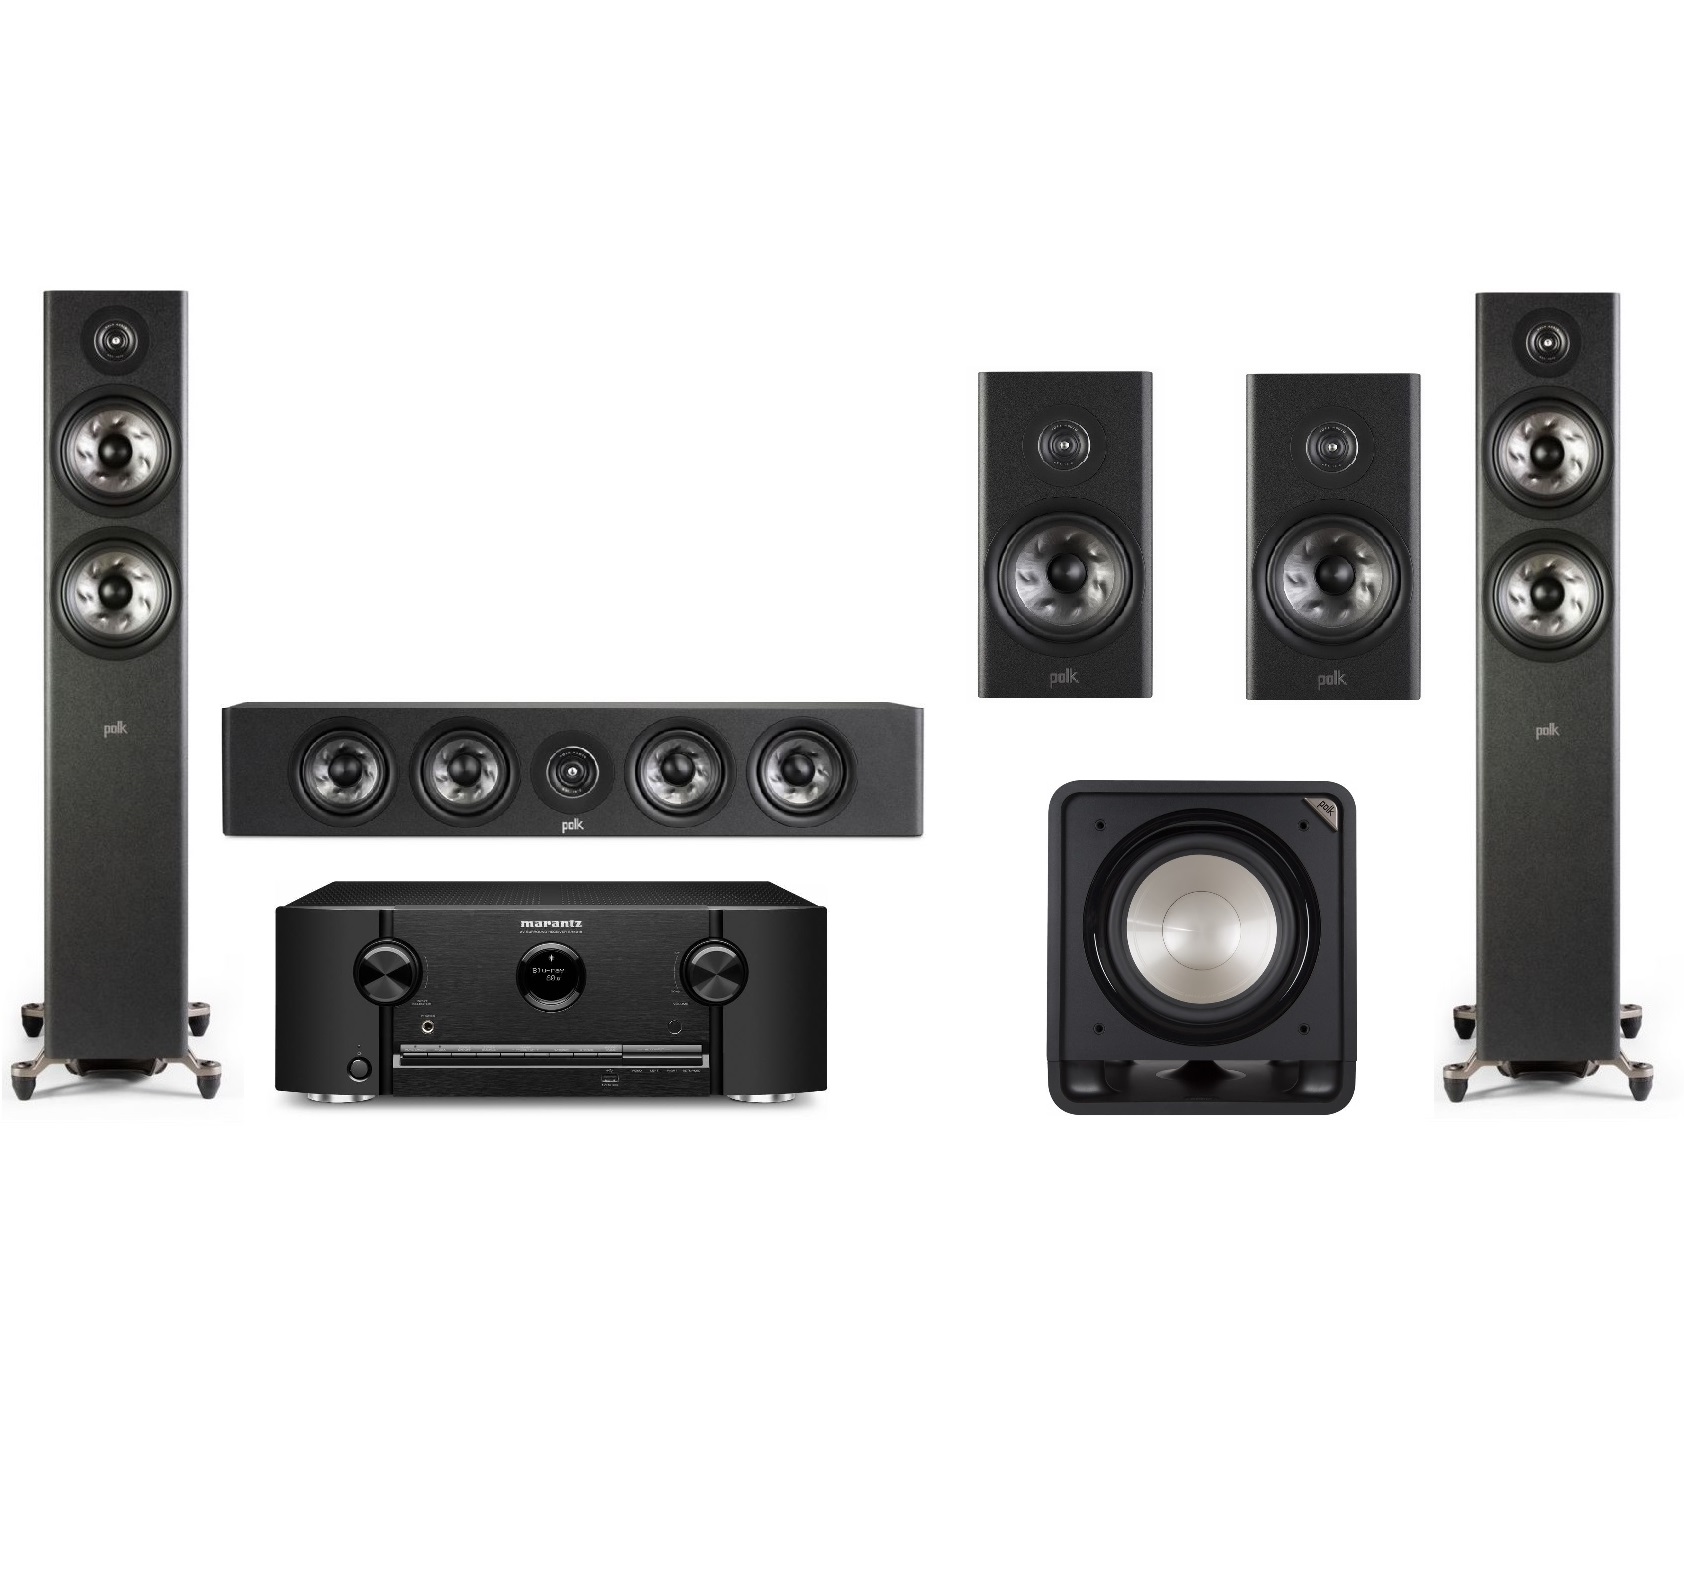 Комплекты 5.1- канальные Marantz SR5015 + Polk Audio Reserve R350 black + Reserve R200 black + Reserve R600 black + HTS SUB 12 black